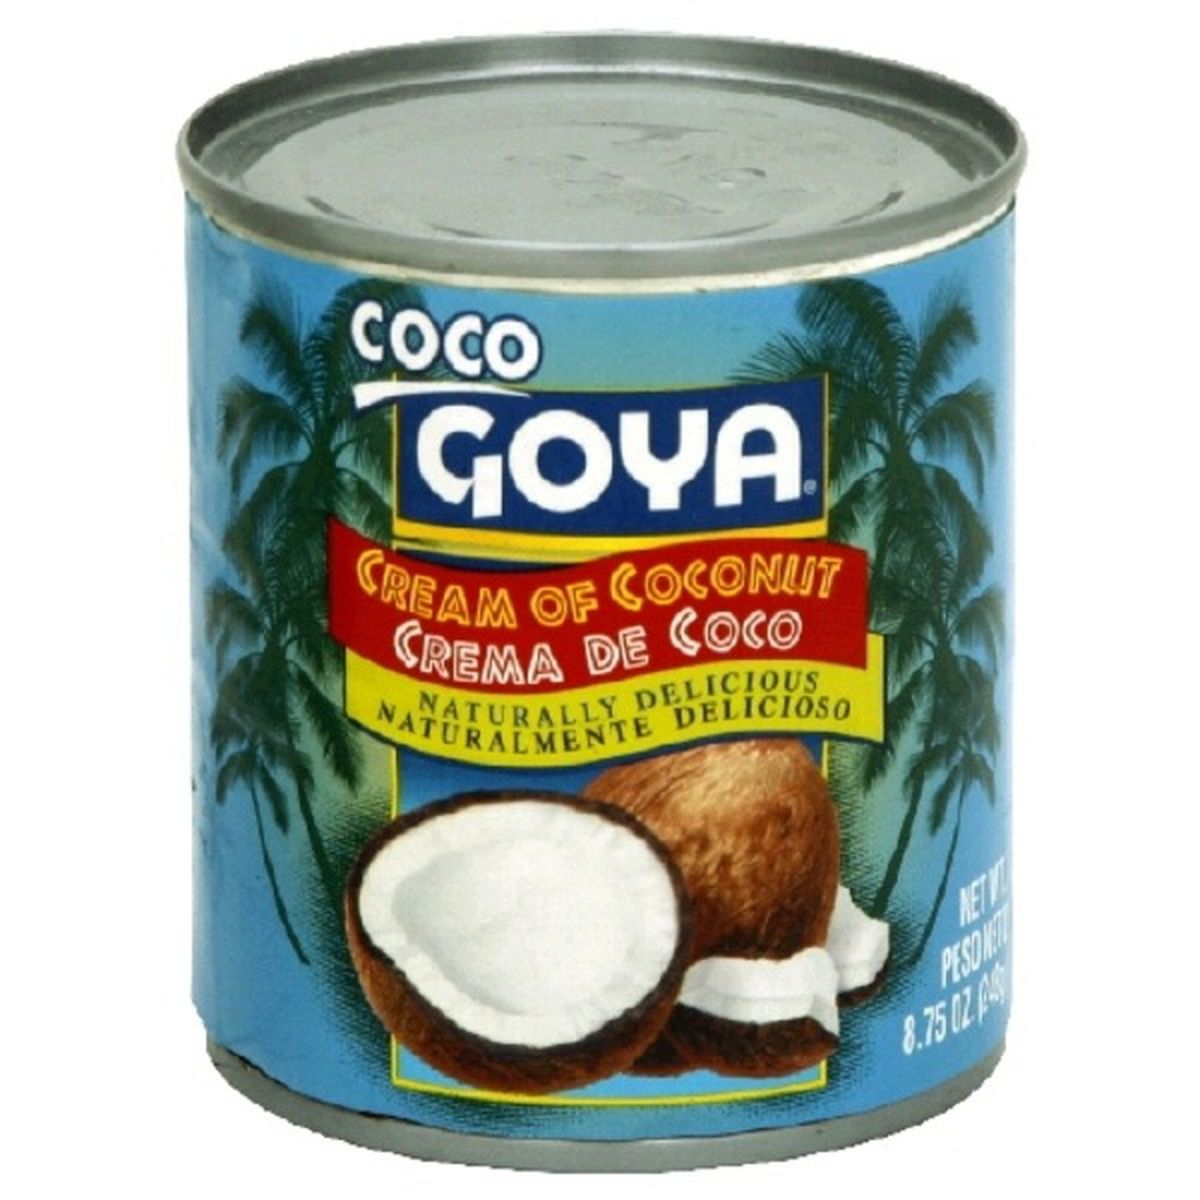 Calories in Goya Coco Cream of Coconut, Delicious